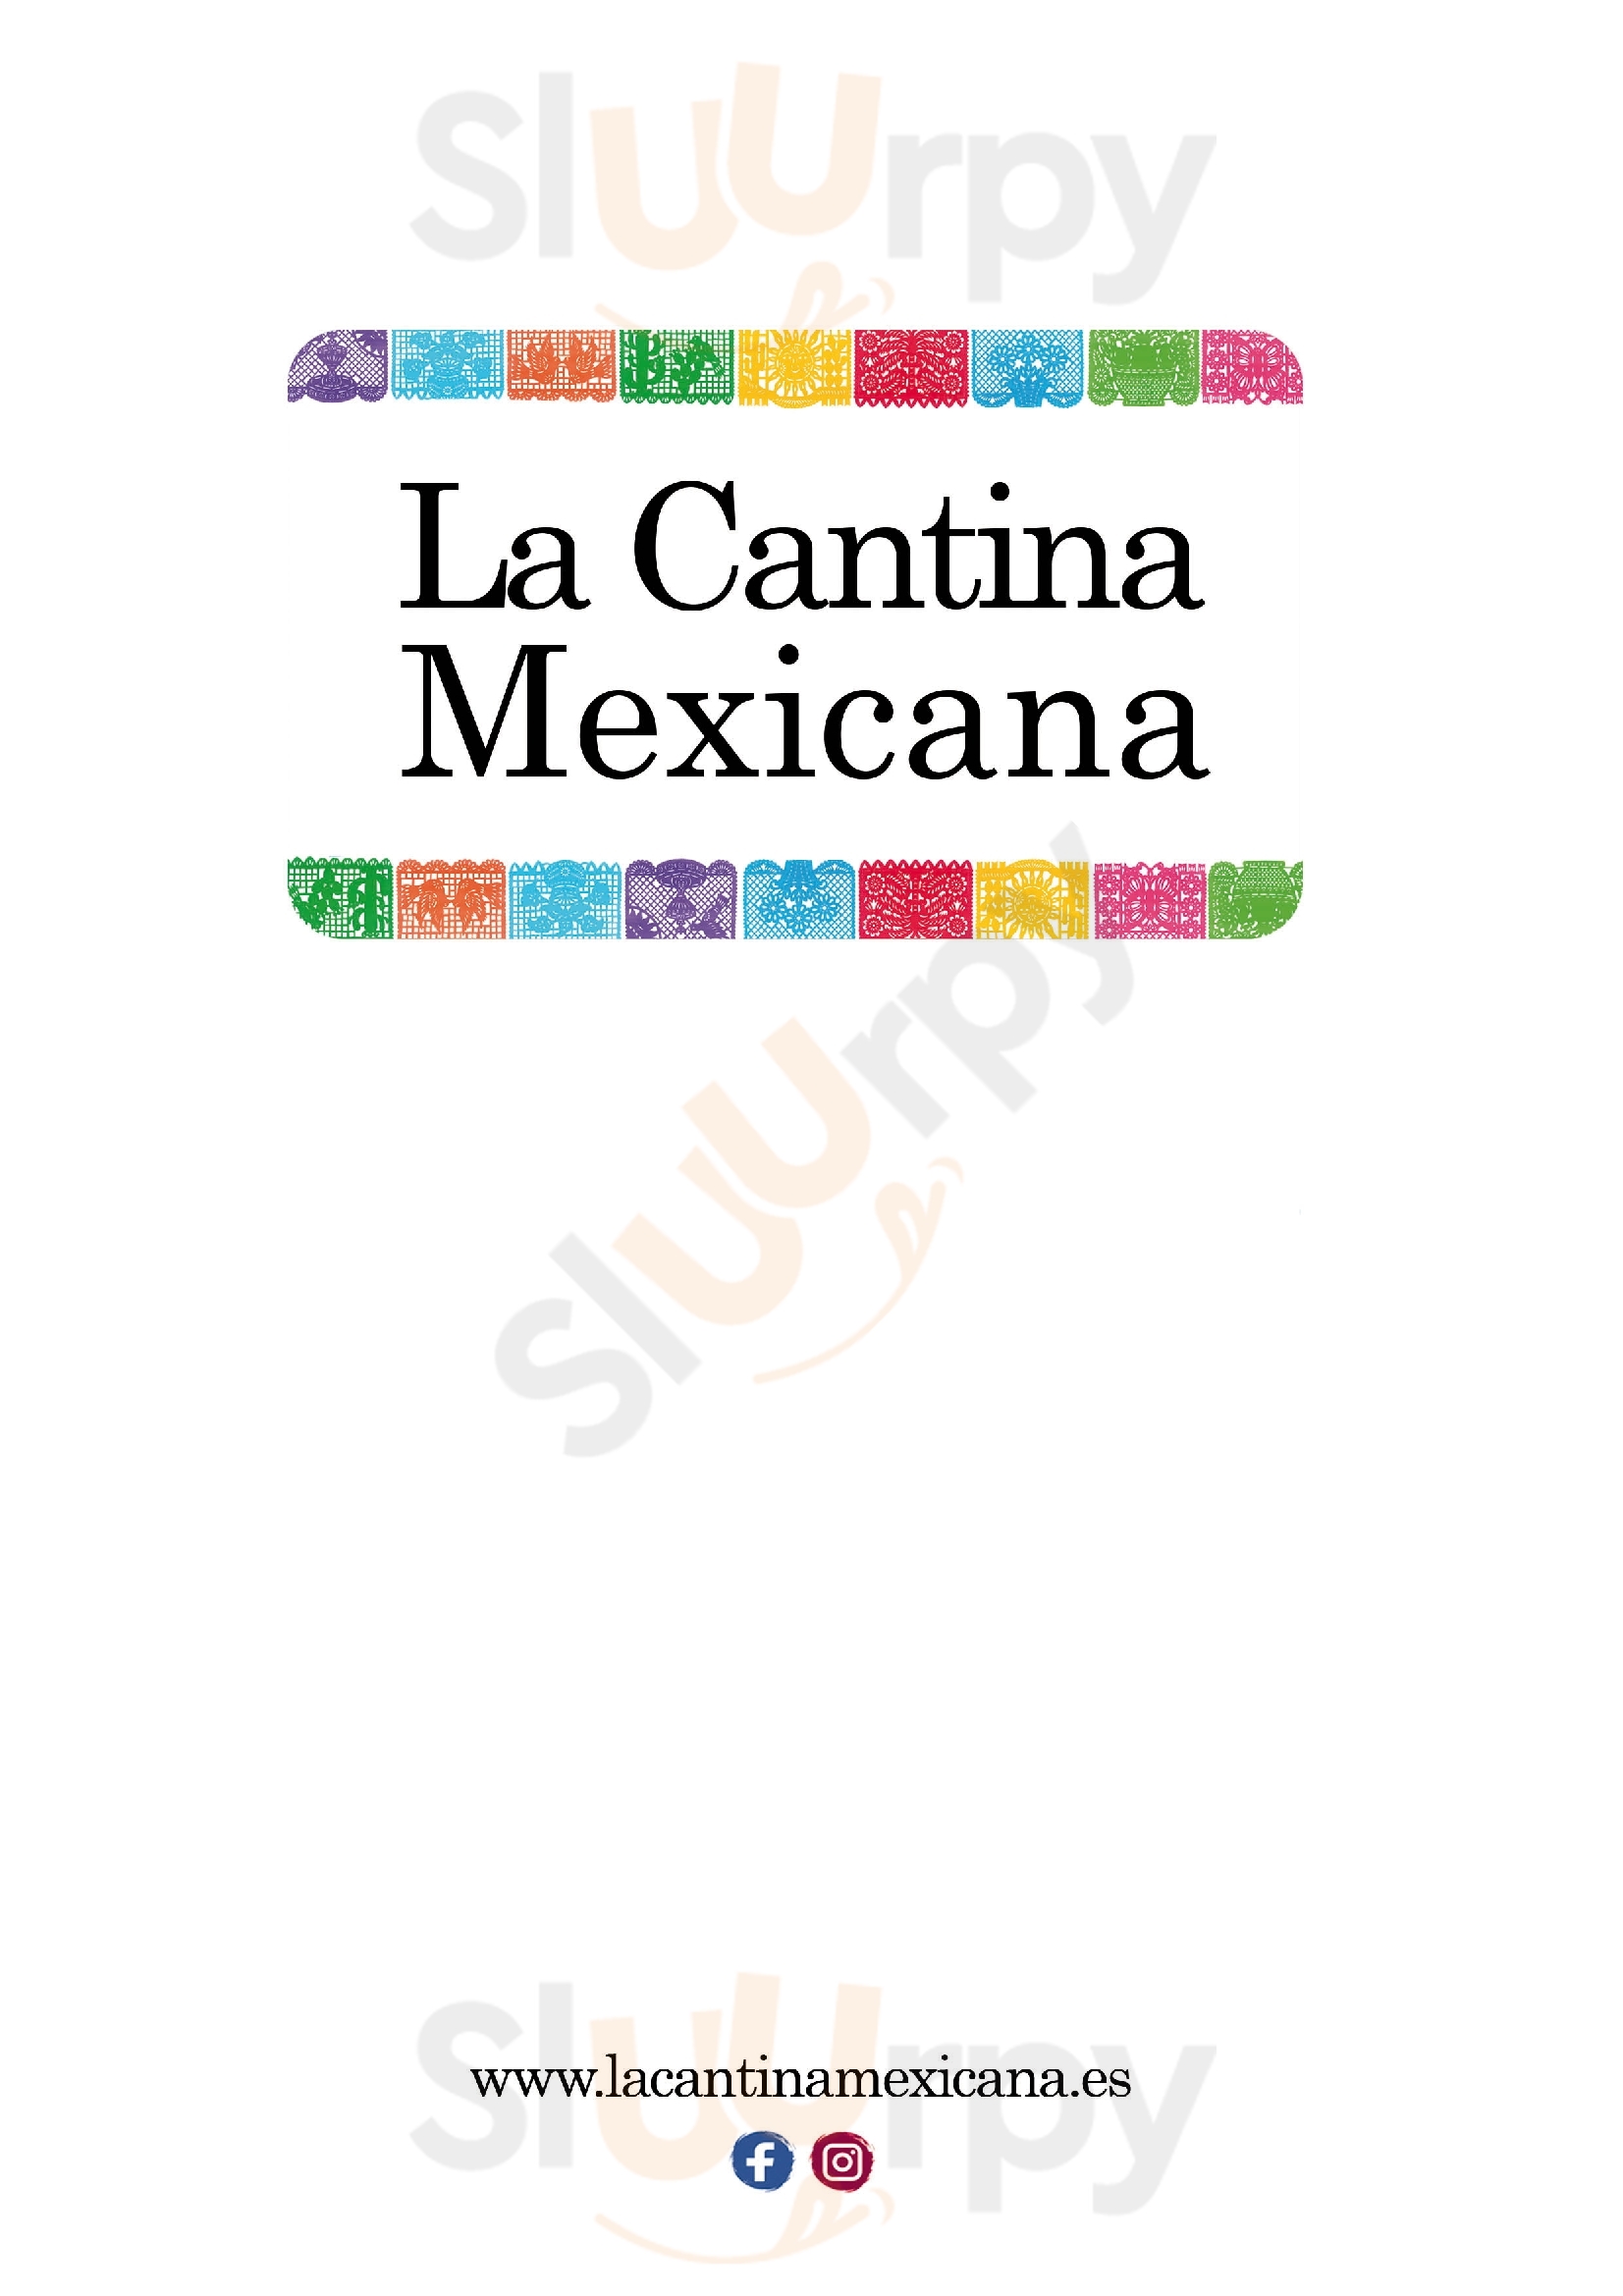 La Cantina Mexicana Sevilla Menu - 1